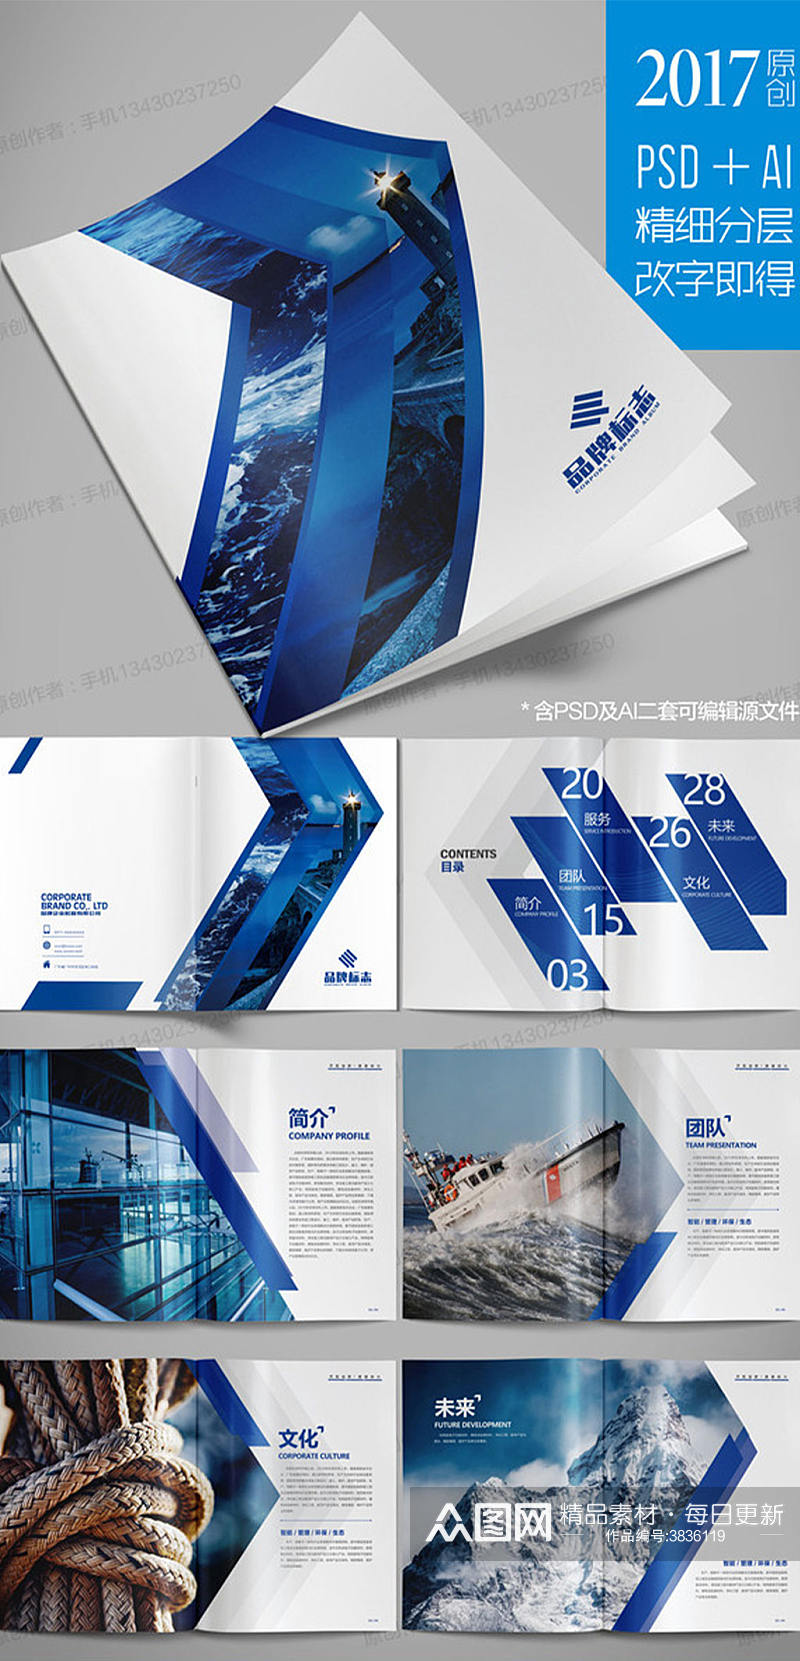 高端大气蓝色企业文化画册模板素材